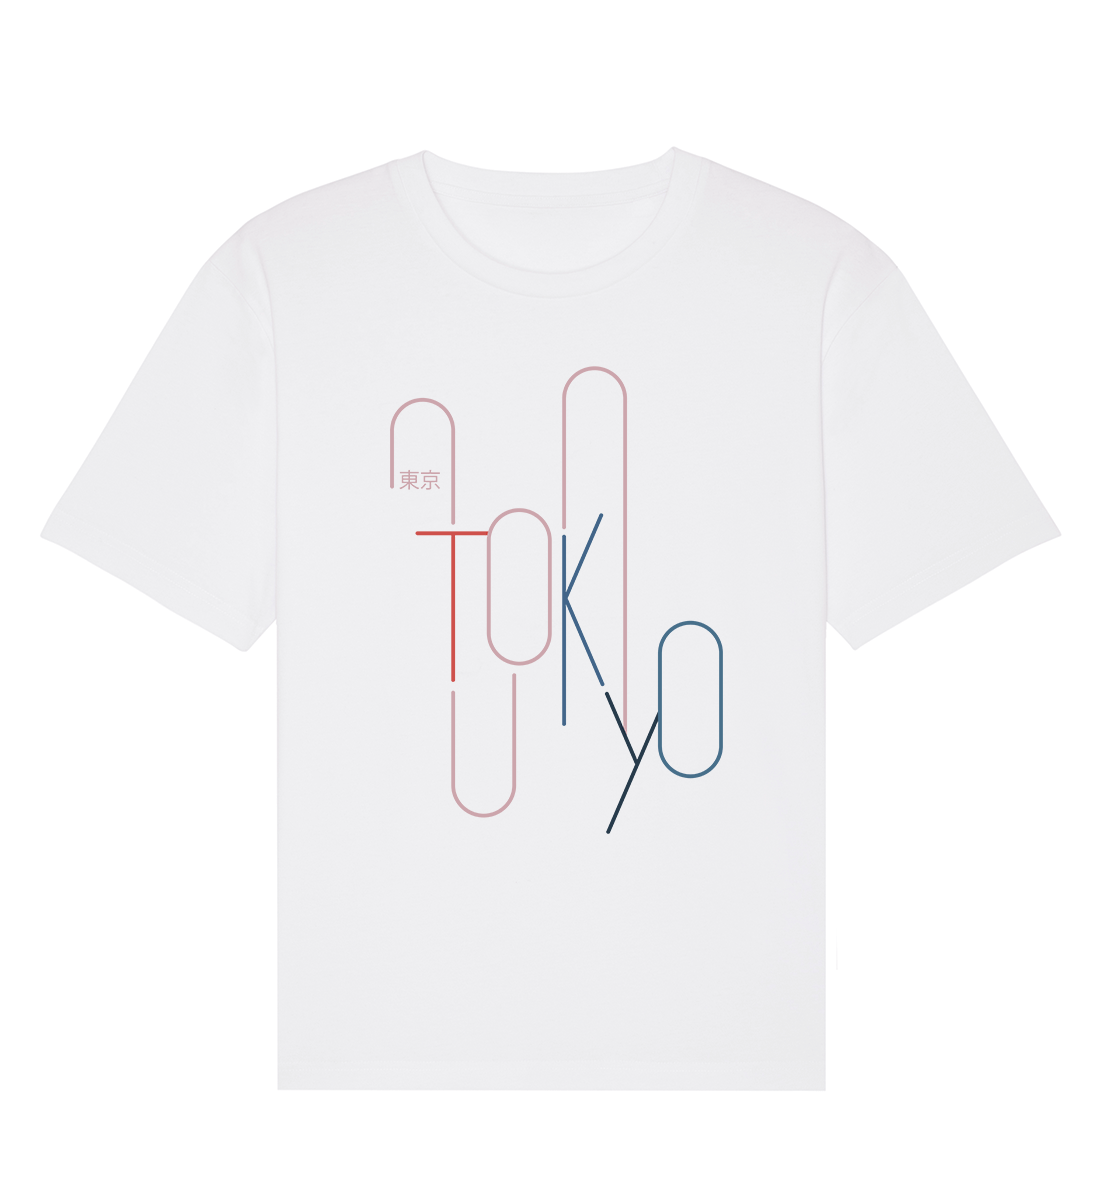 Tokyo No. 1 東京 - Men's Relaxed T-Shirt